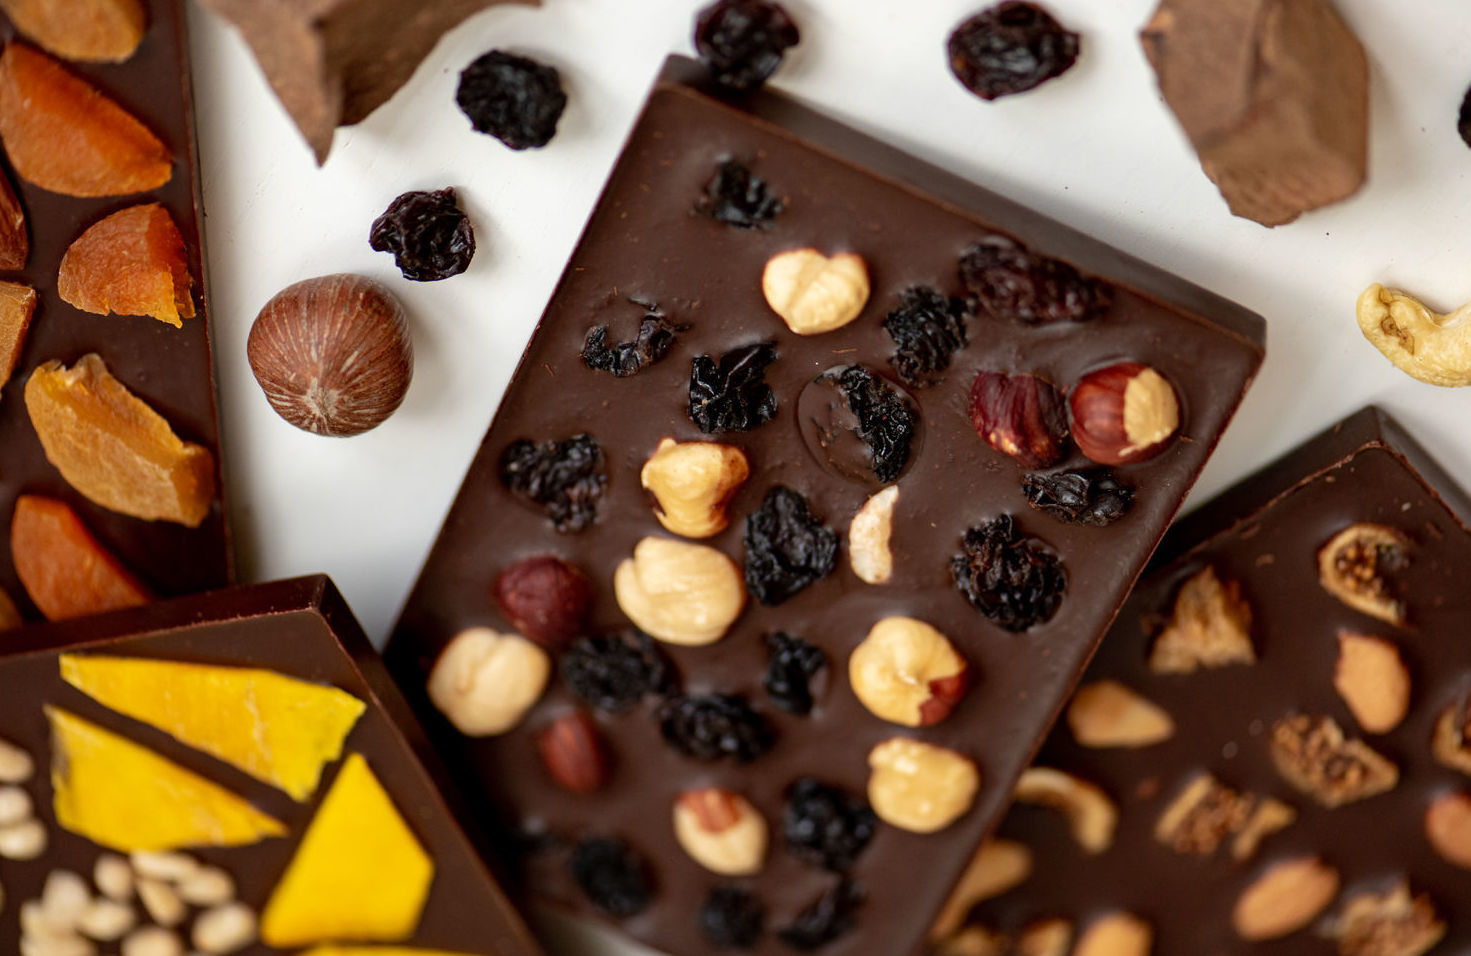 Шоколадка изюм орехи. Шоколад с орехами. Сухофрукты в шоколаде. День изюма в шоколаде. Шоколад изюминка.